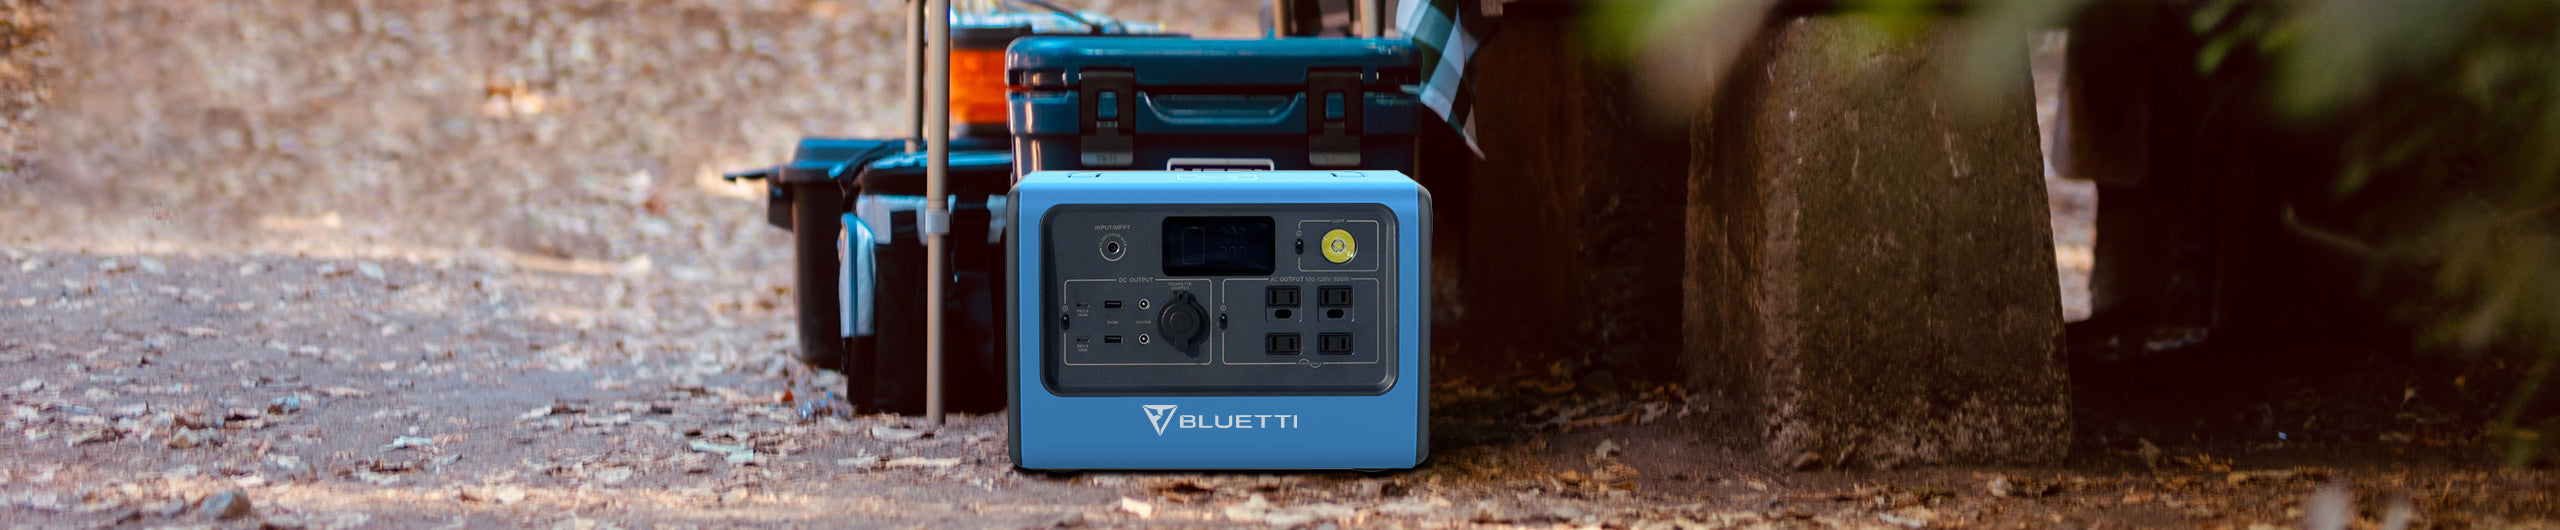 Bluetti  Batería externa para portátil PowerOak K2 solar 185Wh